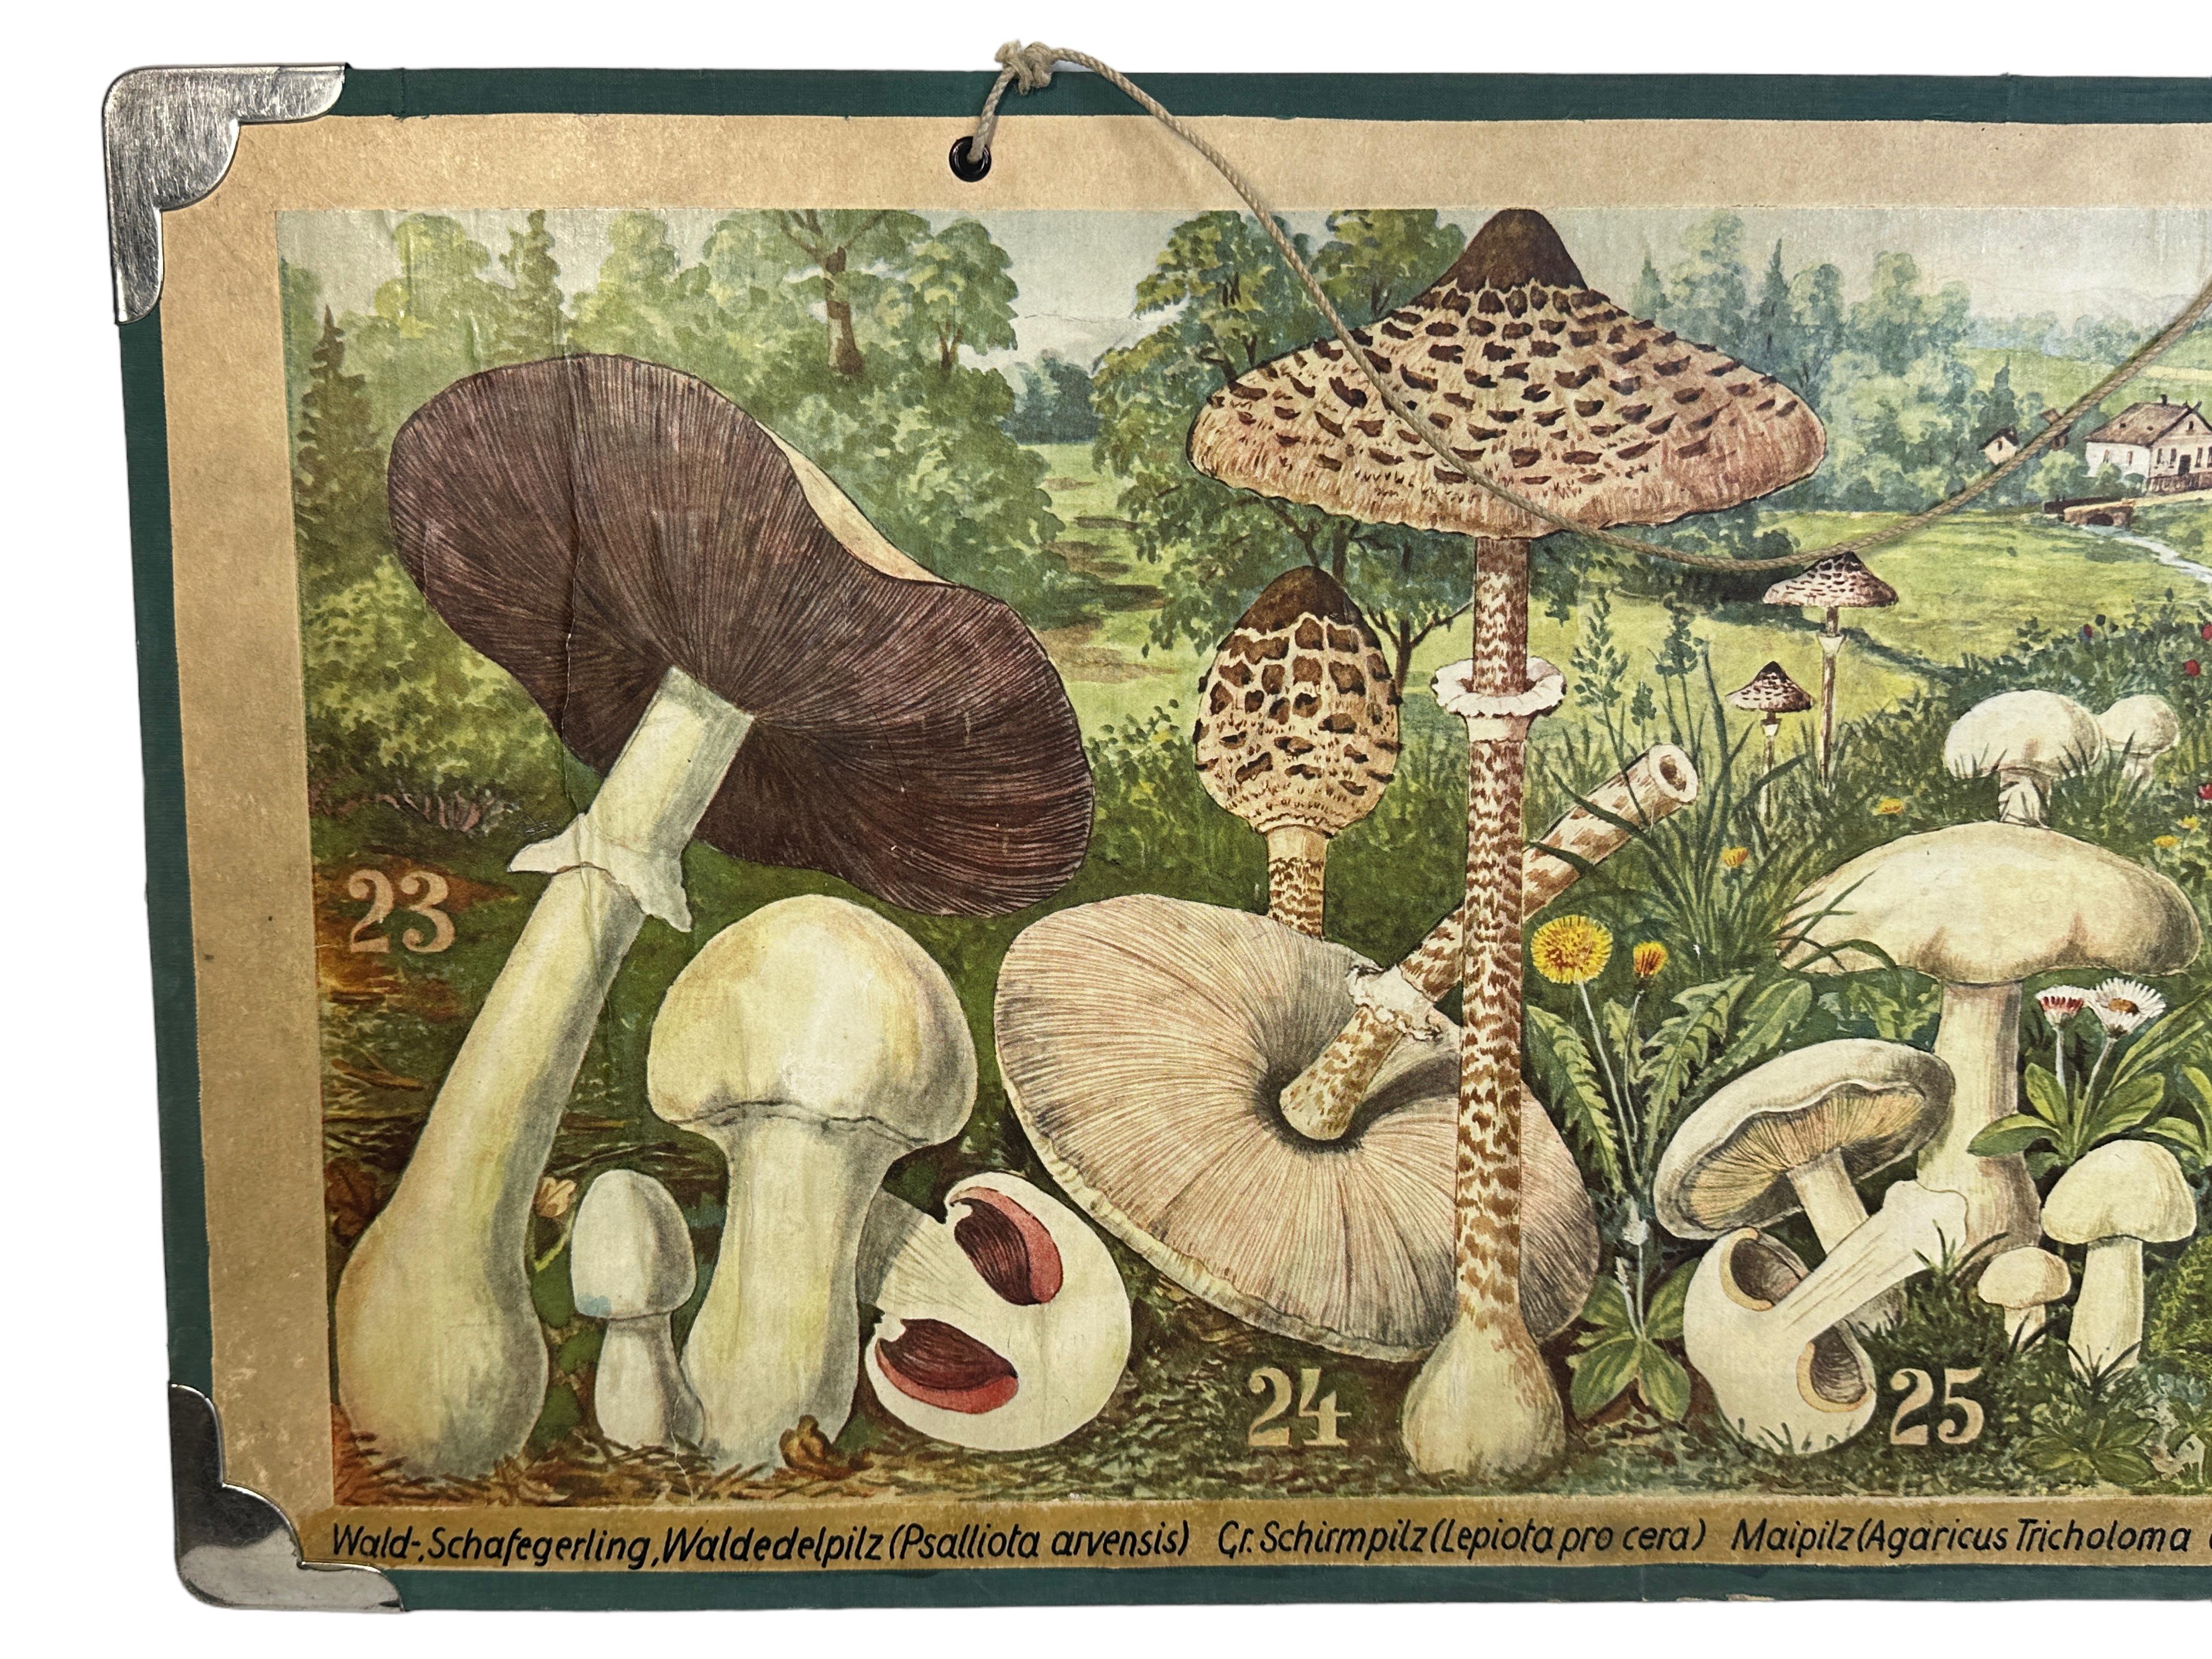 Diese seltene Vintage-Wandtafel zeigt verschiedene Arten von Pilzen, die in Mitteleuropa heimisch sind. Diese Art von Wandtafeln werden in deutschen Schulen als Unterrichtsmaterial verwendet. Bunter Druck auf verstärktem Karton. 
Diese Art von